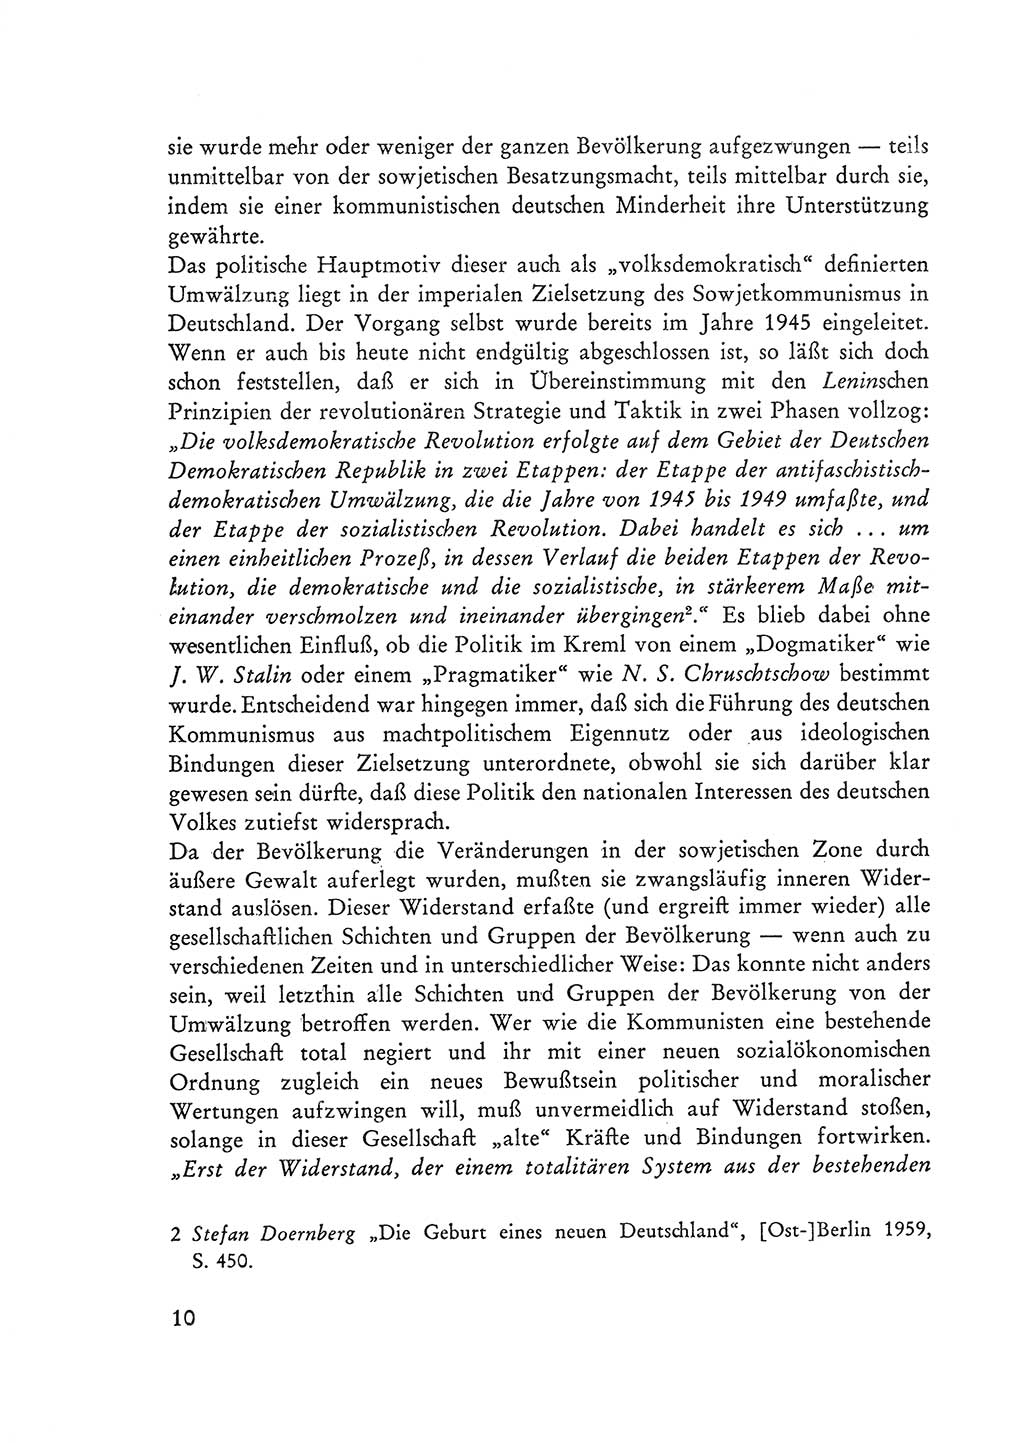 Selbstbehauptung und Widerstand in der Sowjetischen Besatzungszone (SBZ) Deutschlands [Deutsche Demokratische Republik (DDR)] 1964, Seite 10 (Selbstbeh. Wdst. SBZ Dtl. DDR 1964, S. 10)